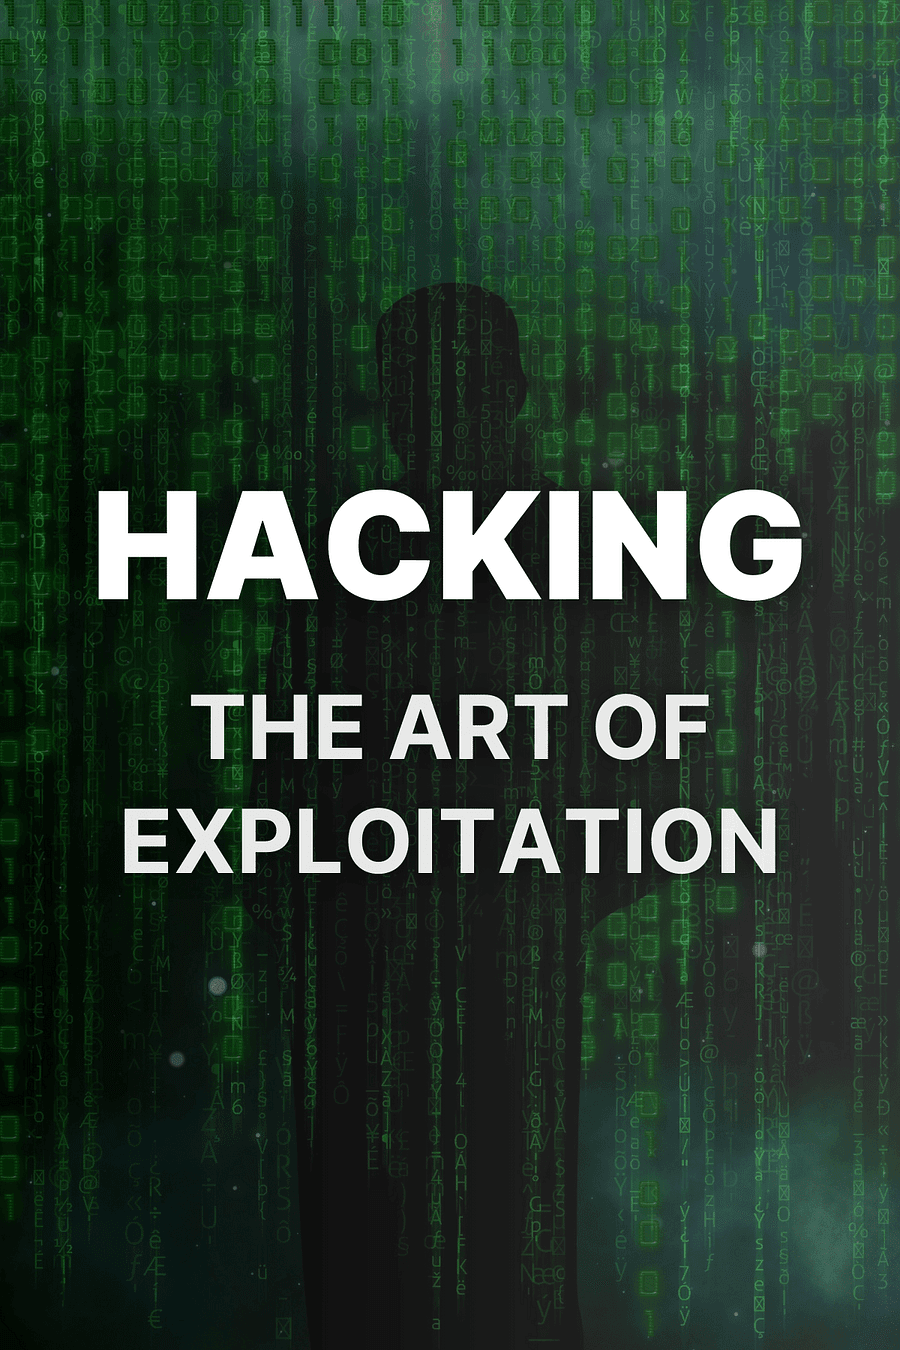 Hacking by Jon Erickson - Book Summary